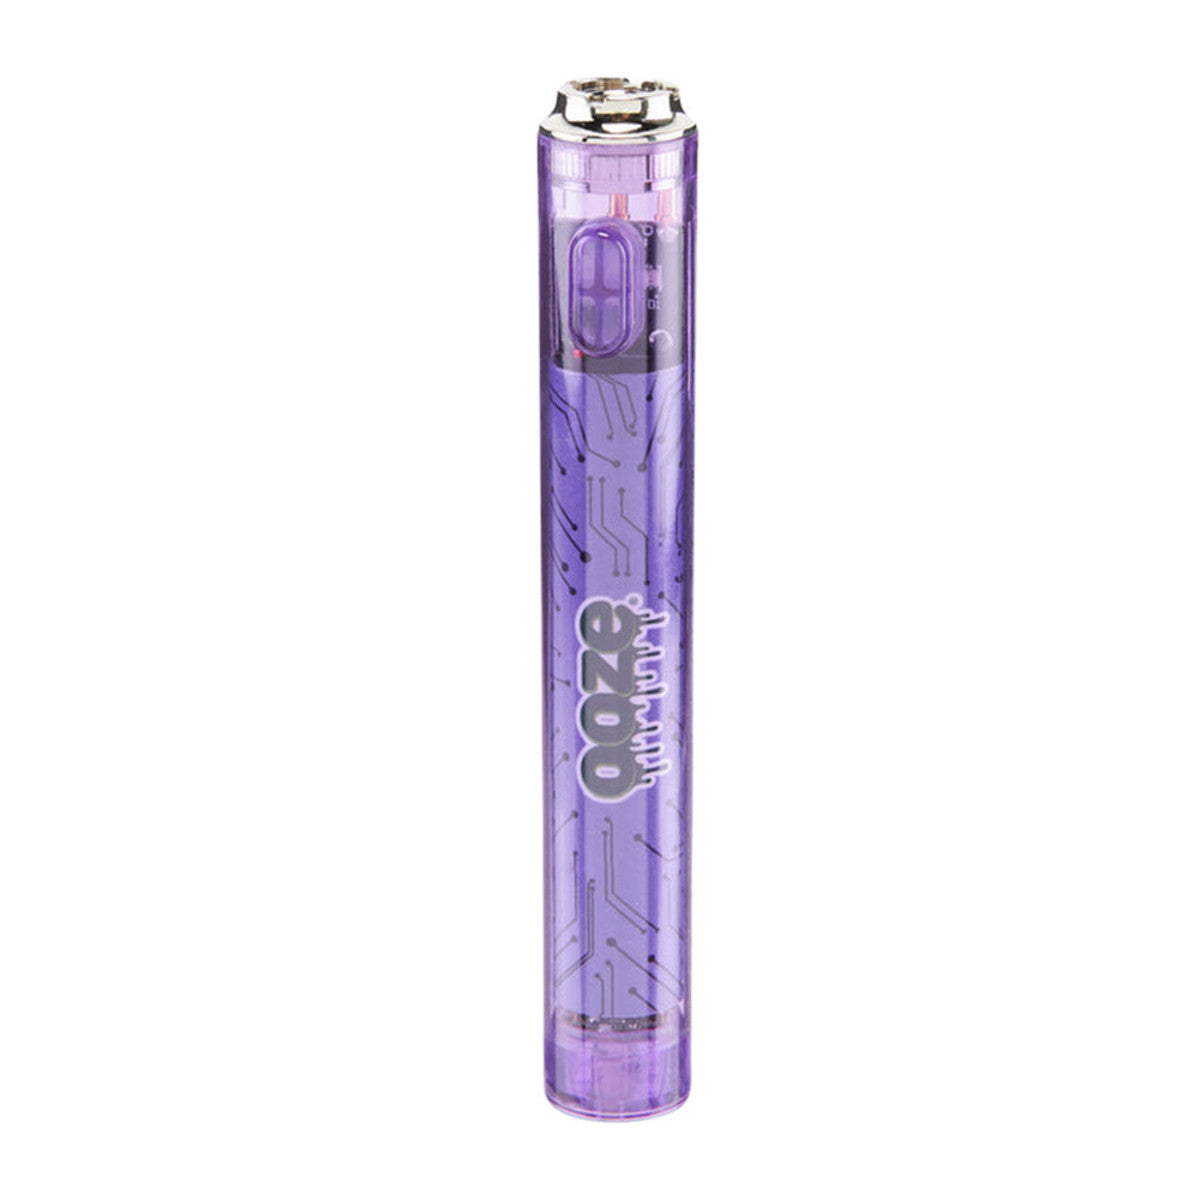 Ooze Slim Clear Series 510 Vape Cartridge Battery Ultra Purple